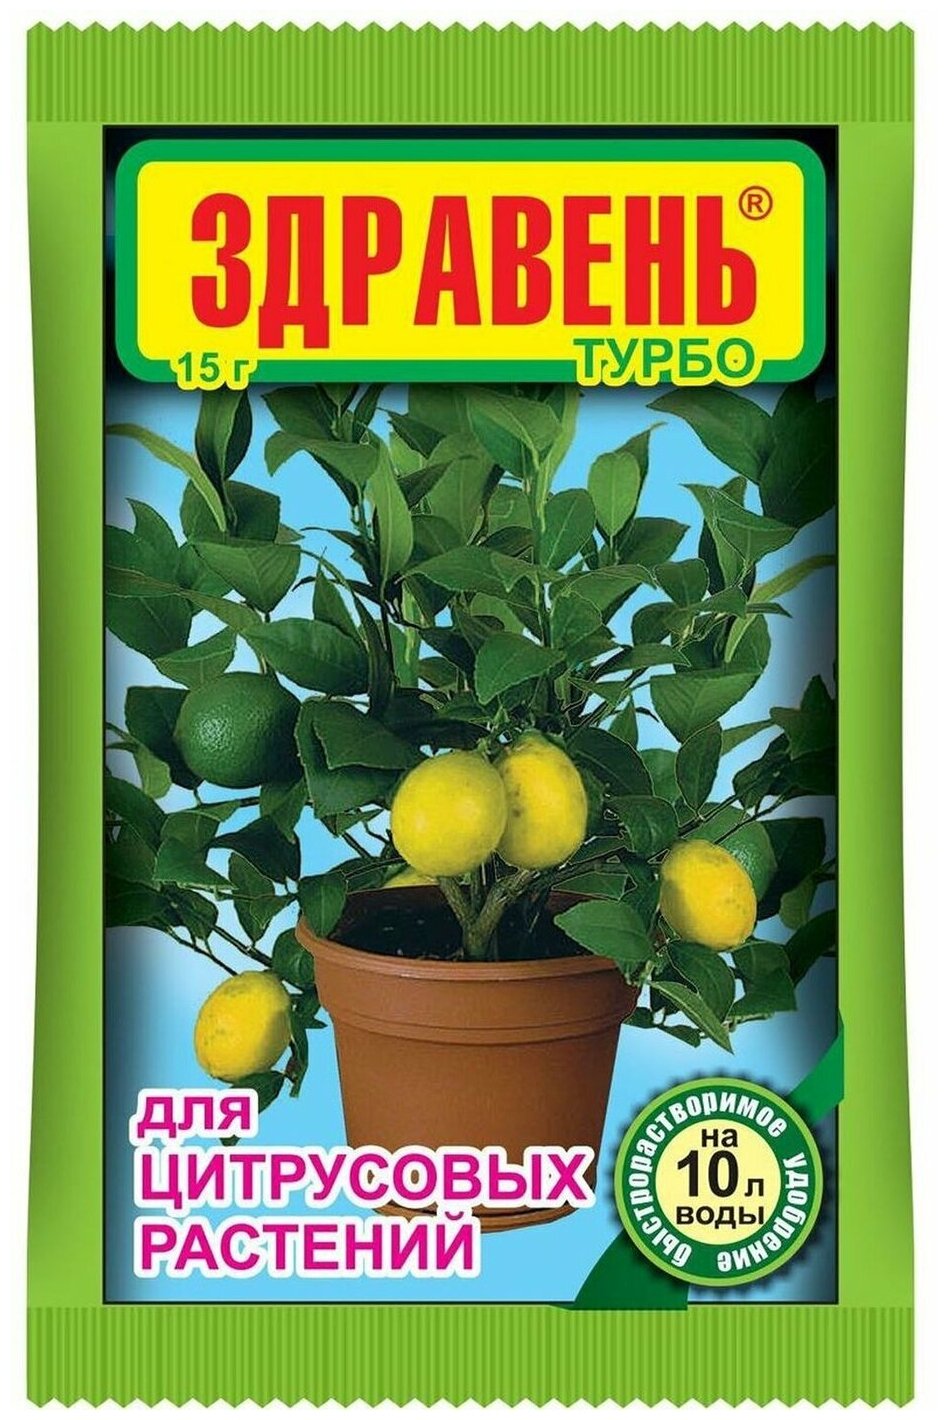 Удобрение Здравень для цитрусовых растений 15 г